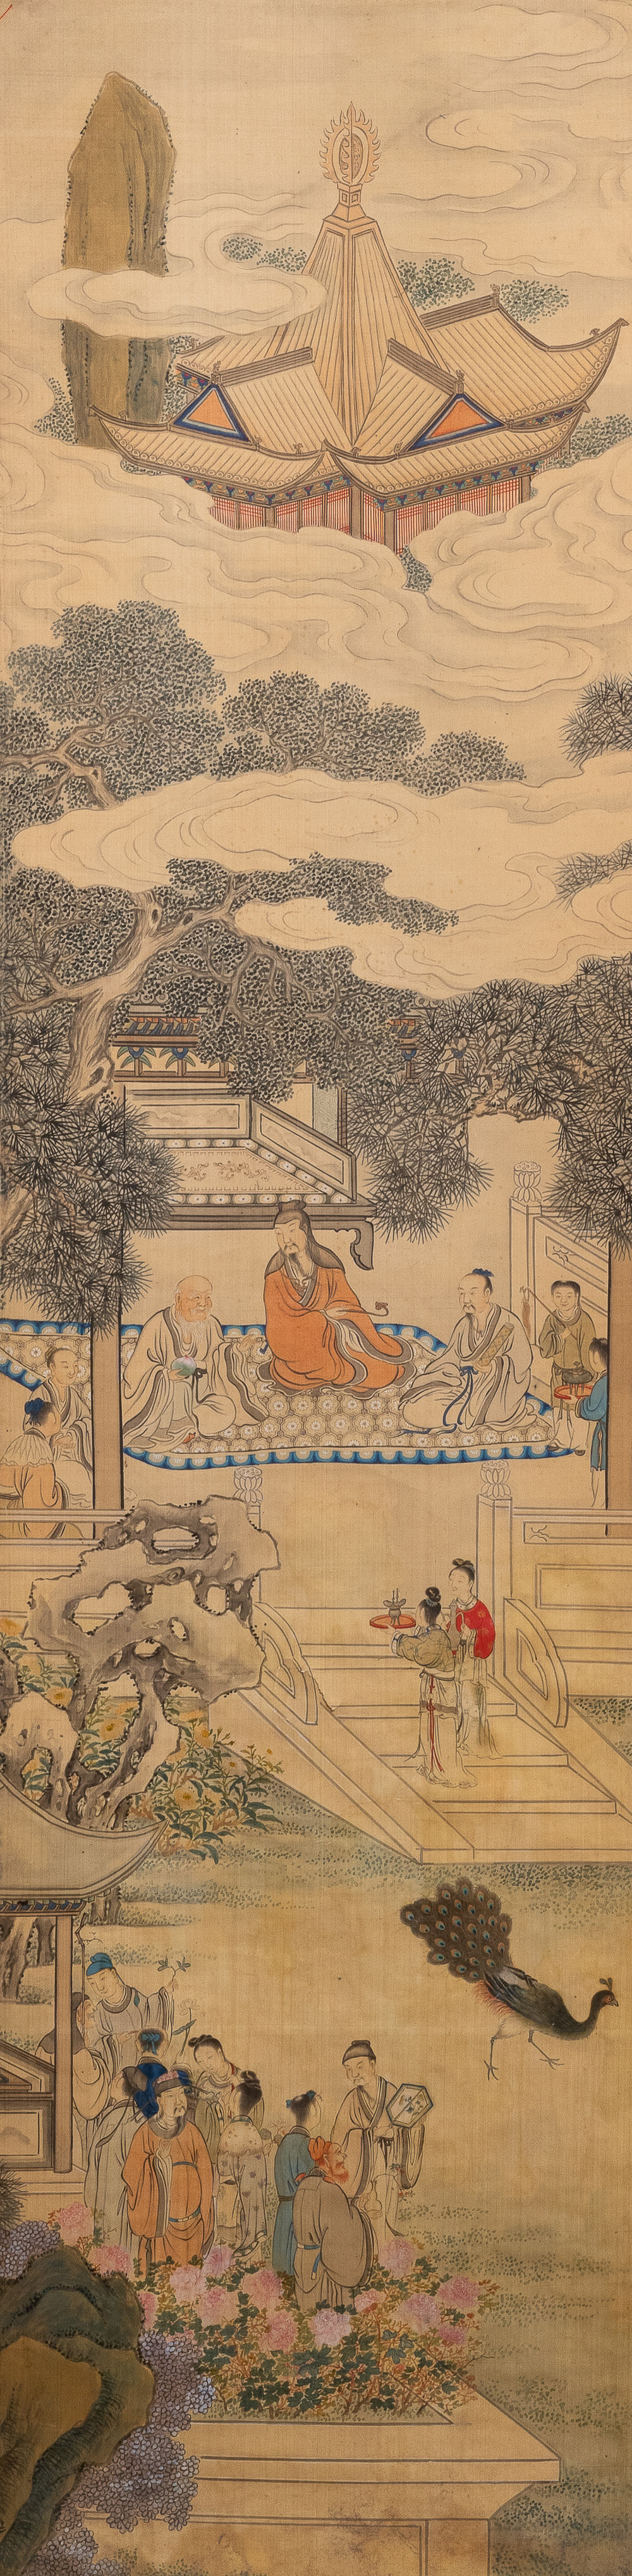 Chinese school, inkt en kleur op zijde, 18/19e eeuw: 'Figuren in een landschap'